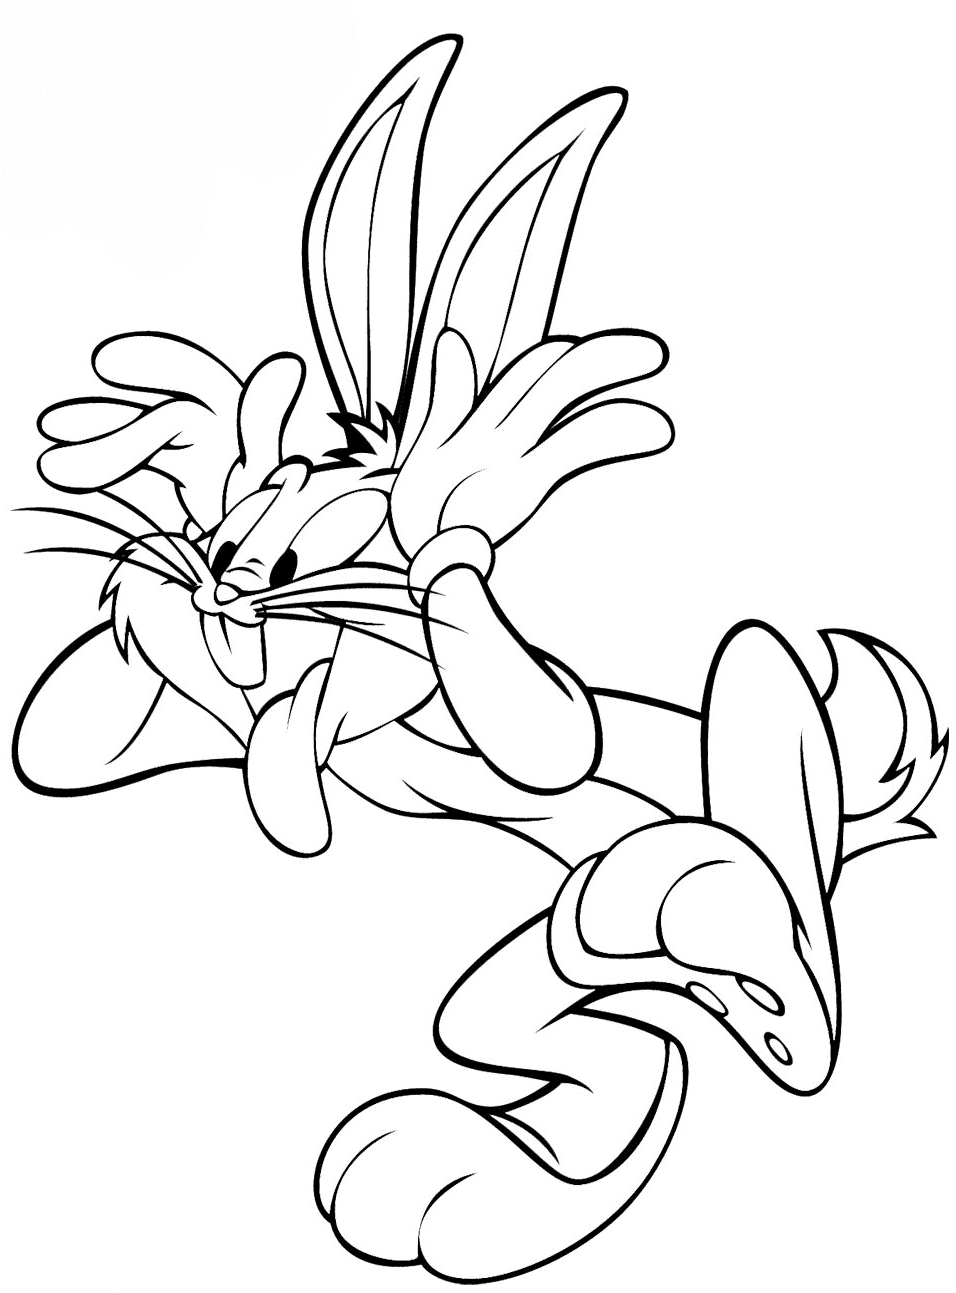 Silly Bugs Bunny dei personaggi di Looney Tunes